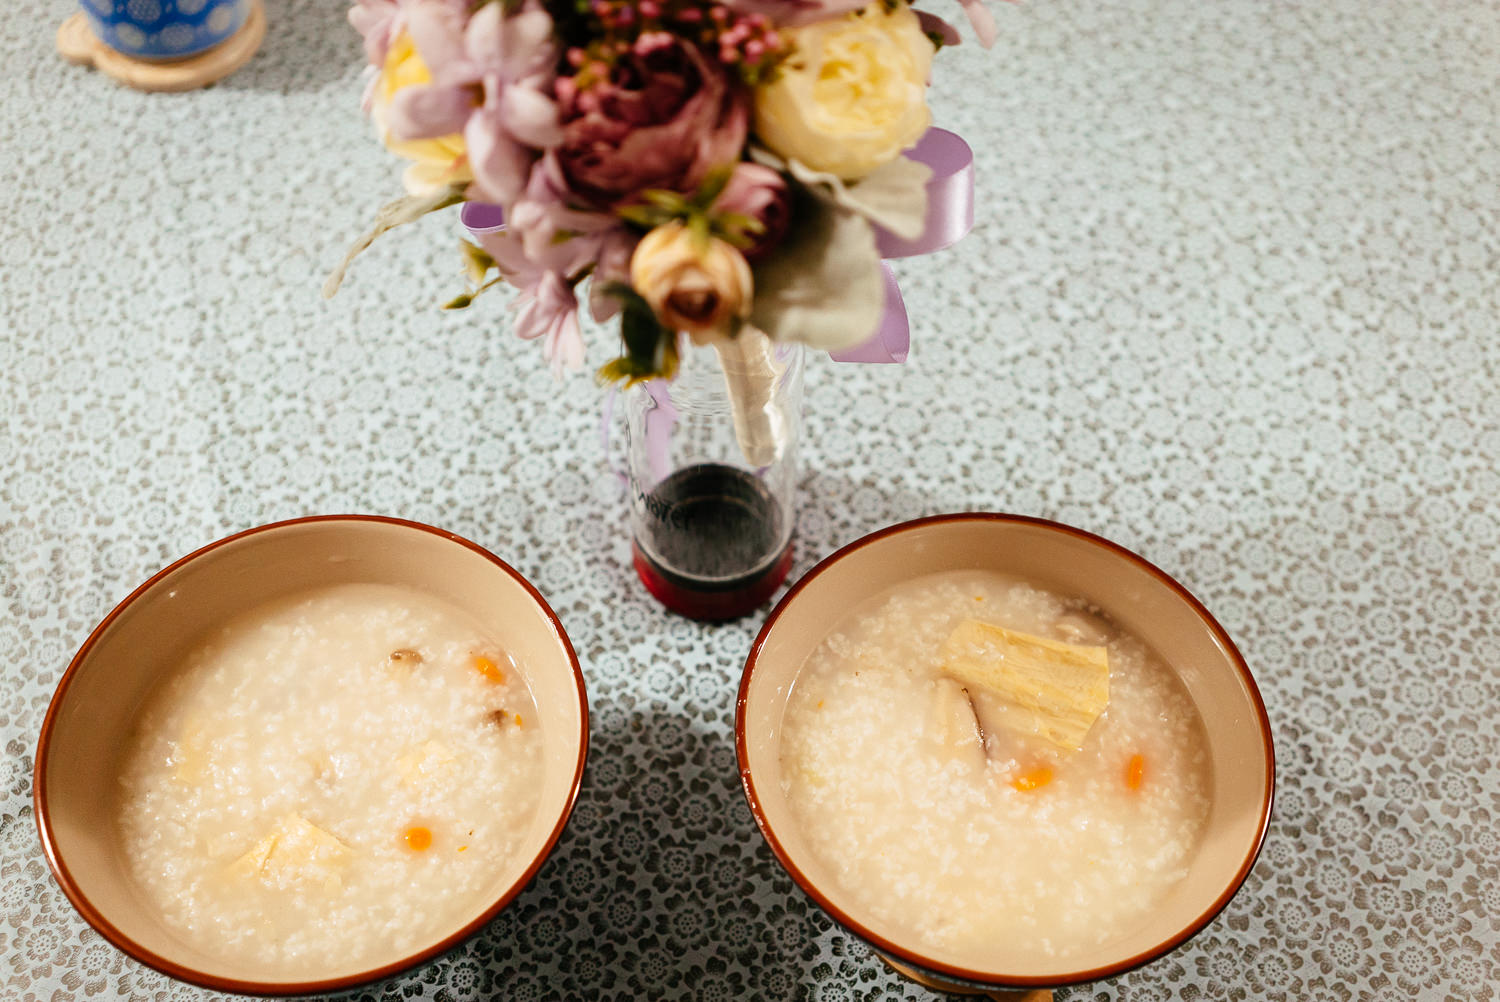 冬菇腐竹甘筍素粥 Shiitake Mushroom Porridge with Bean Curd Sticks and Carrots Vegetarian Recipe